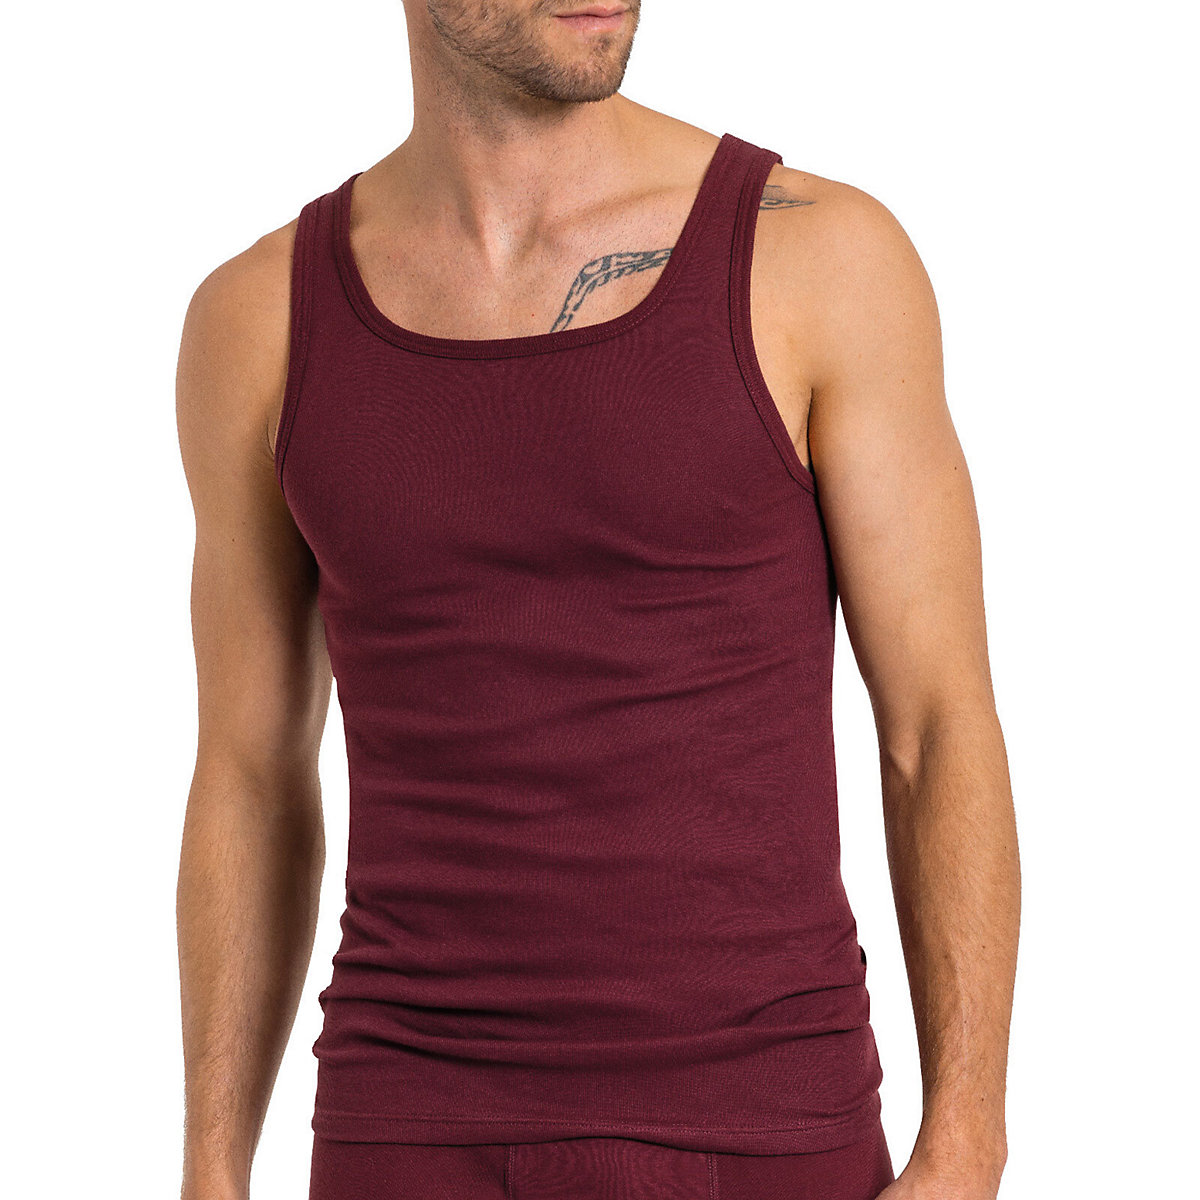 Kumpf Body Fashion 8er Sparpack Herren Unterhemd Bio Cotton Unterhemden blau/rot